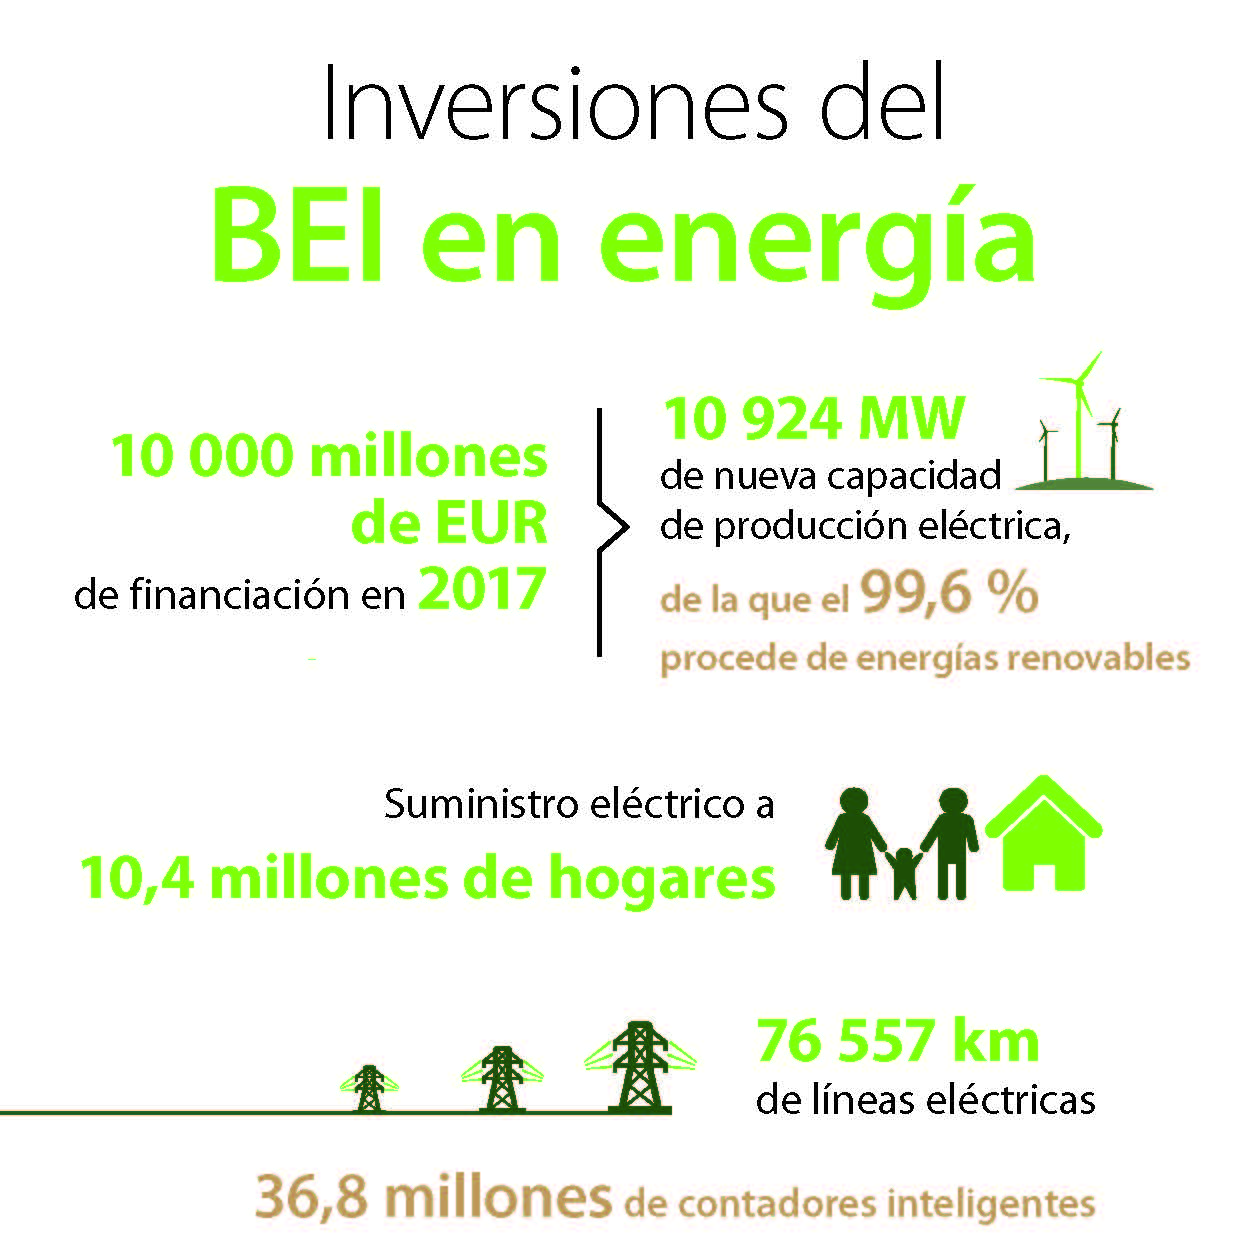 Inversiones del BEI en energia